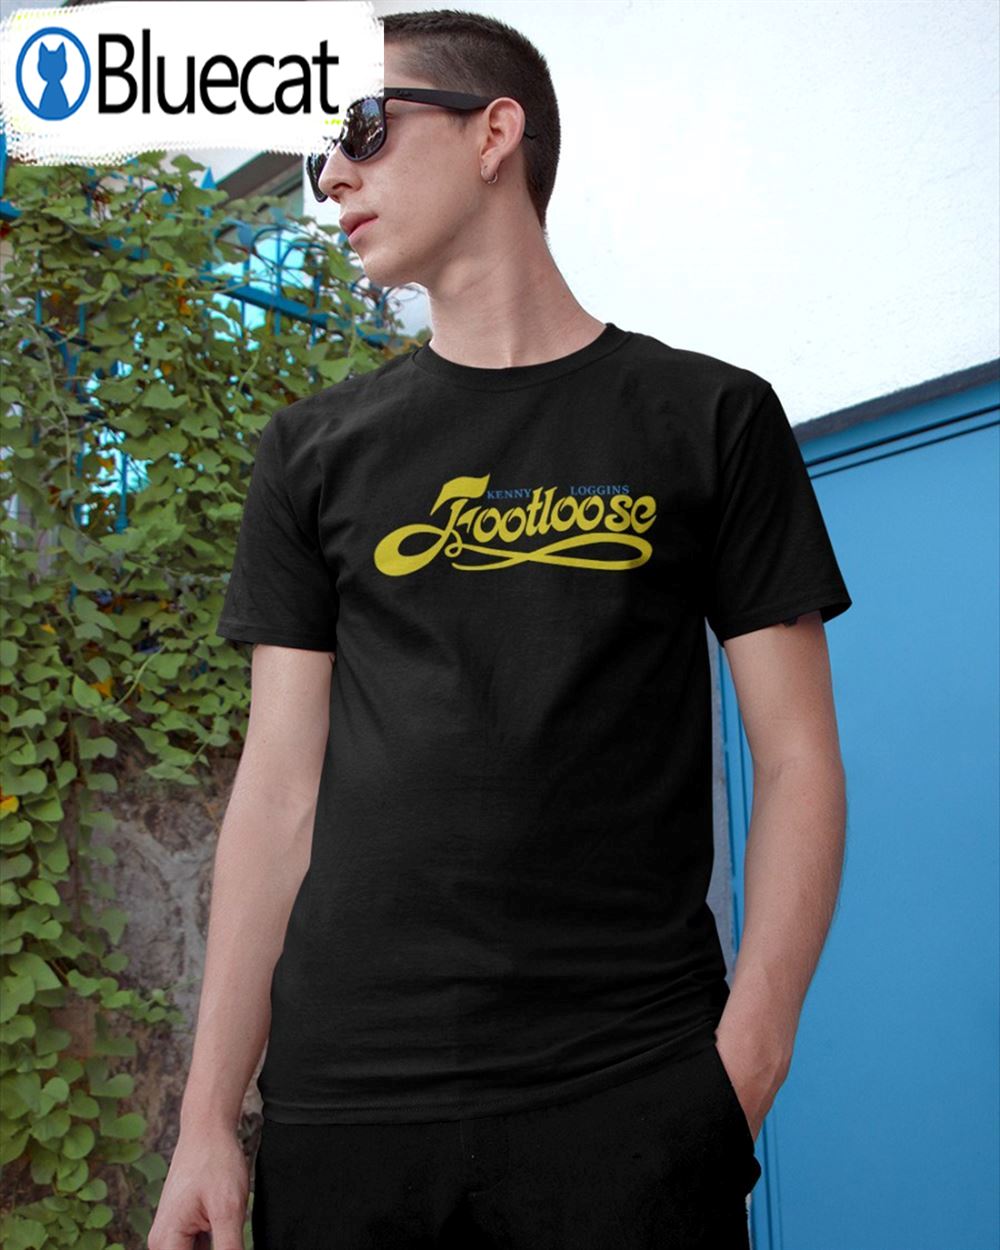 Footloose Kenny Loggins Unisex T-shirt